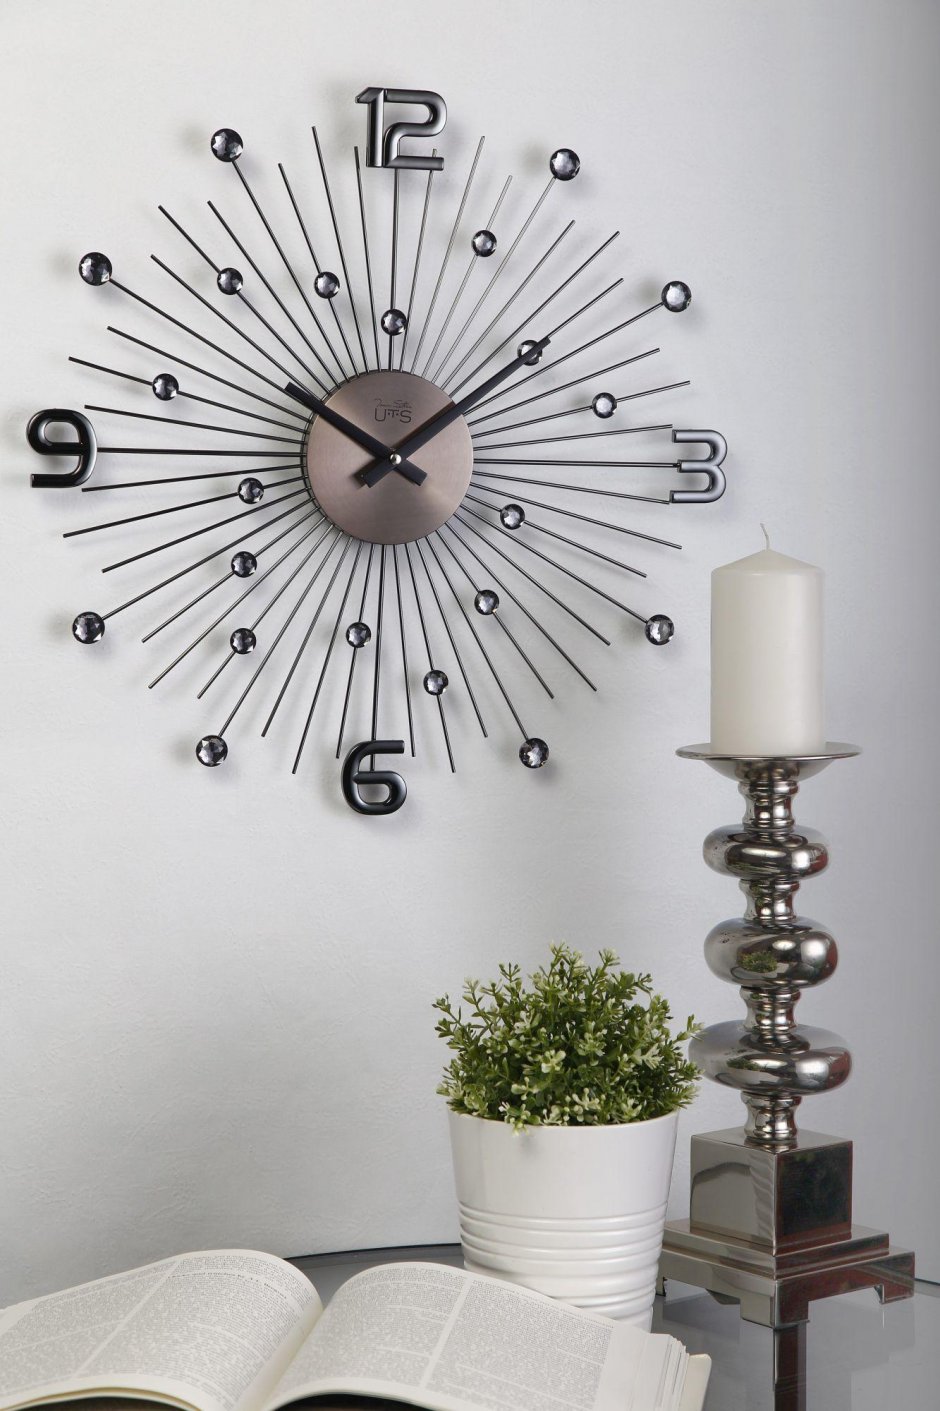 Настенные часы (49 см) Tomas Stern 8057